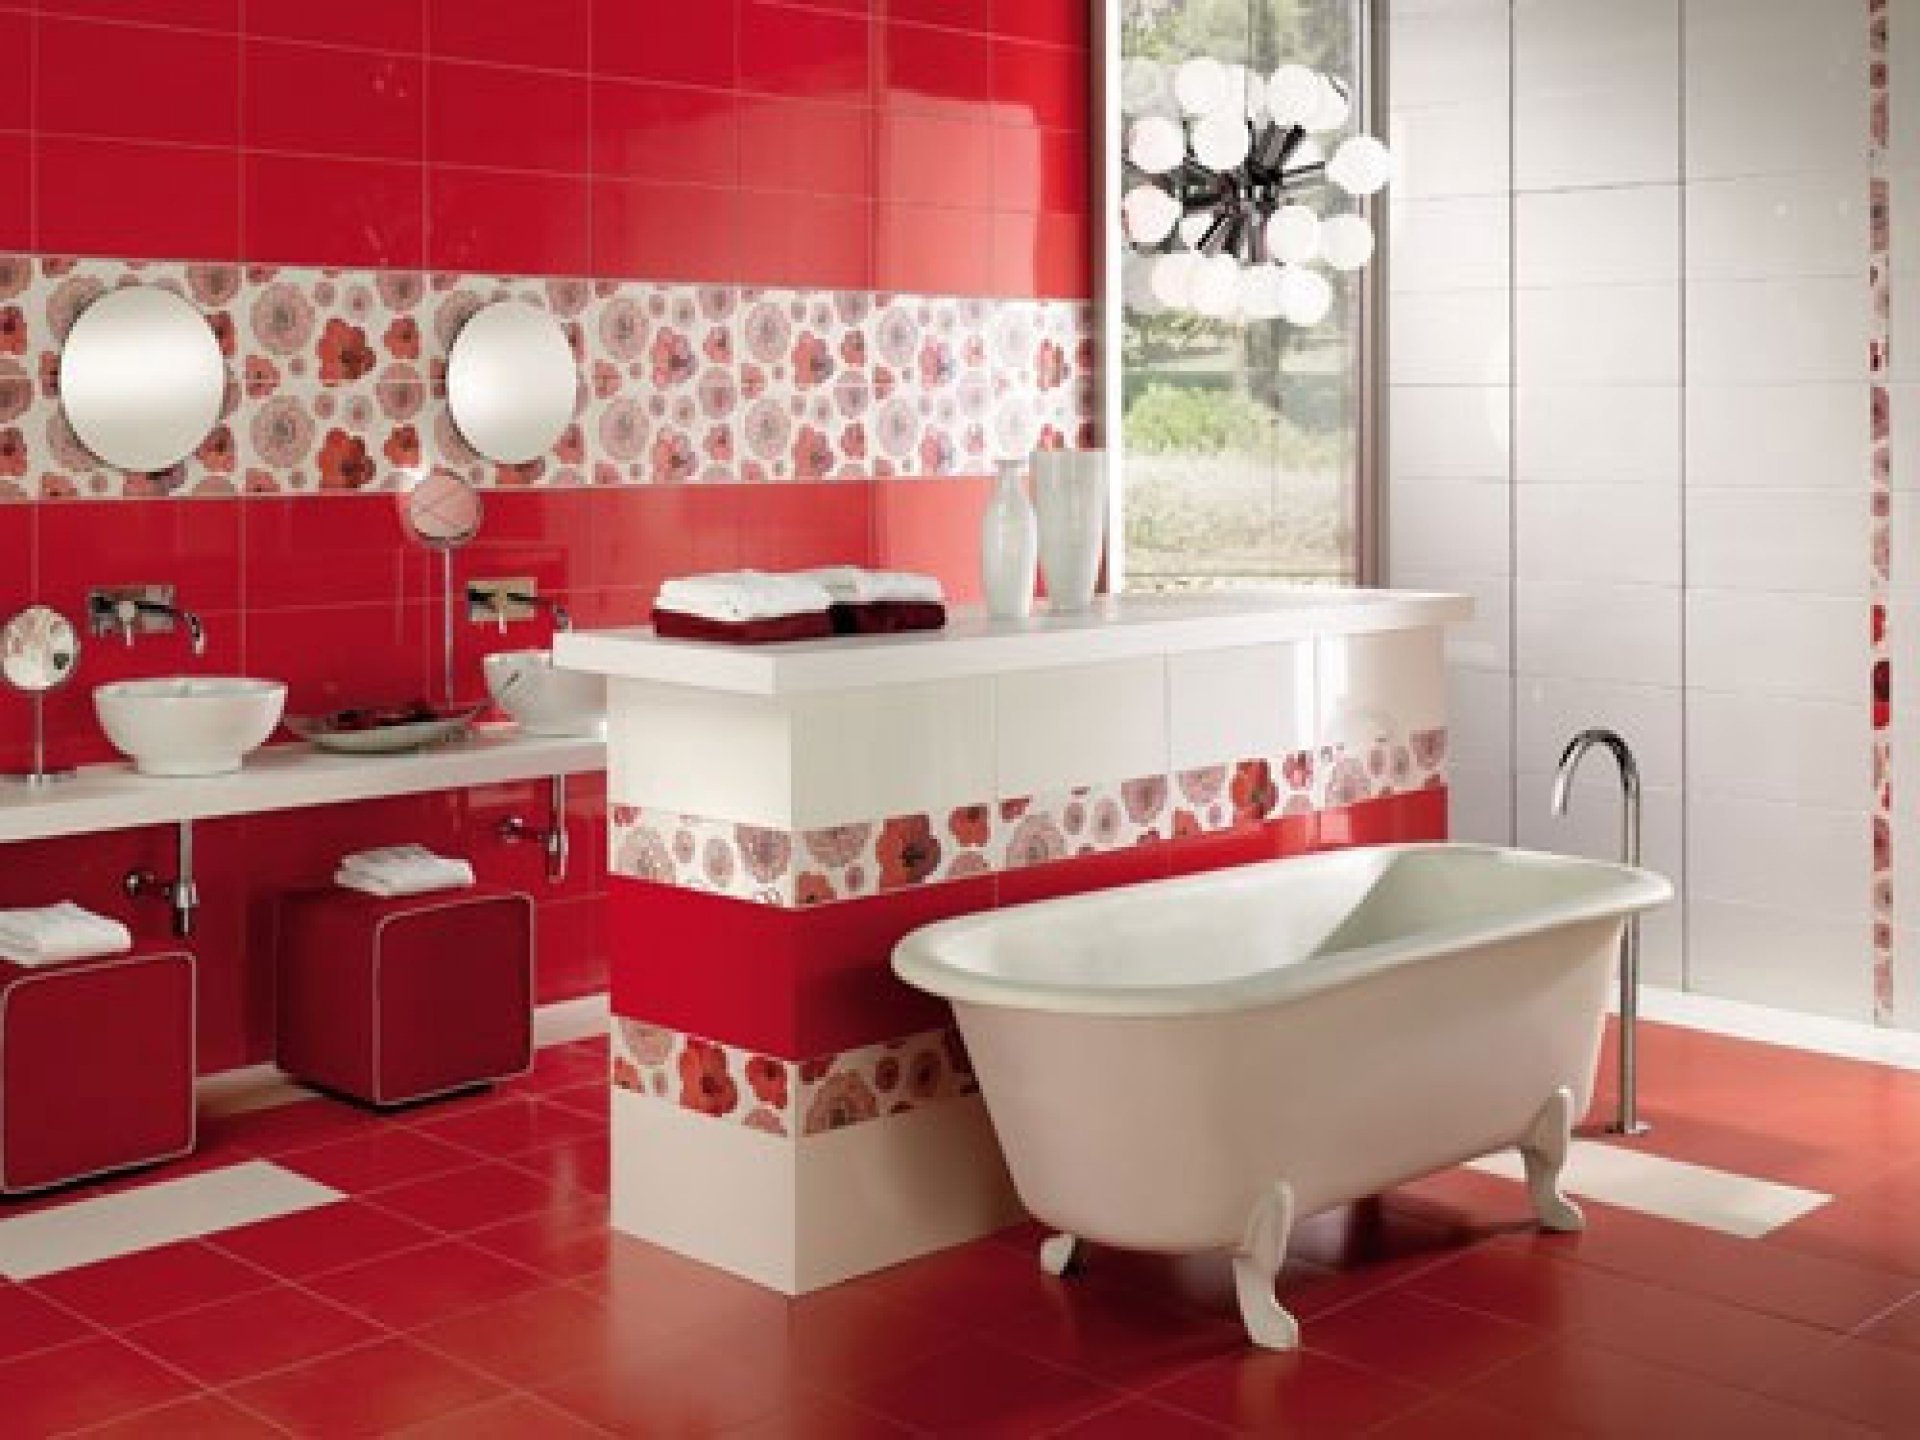 Красная плитка в ванной plitka vanny ru. Красная плитка для ванной. Плитка в ванную красная с белым. Плитка для ванной красная с белым. Красный кафель в ванной.